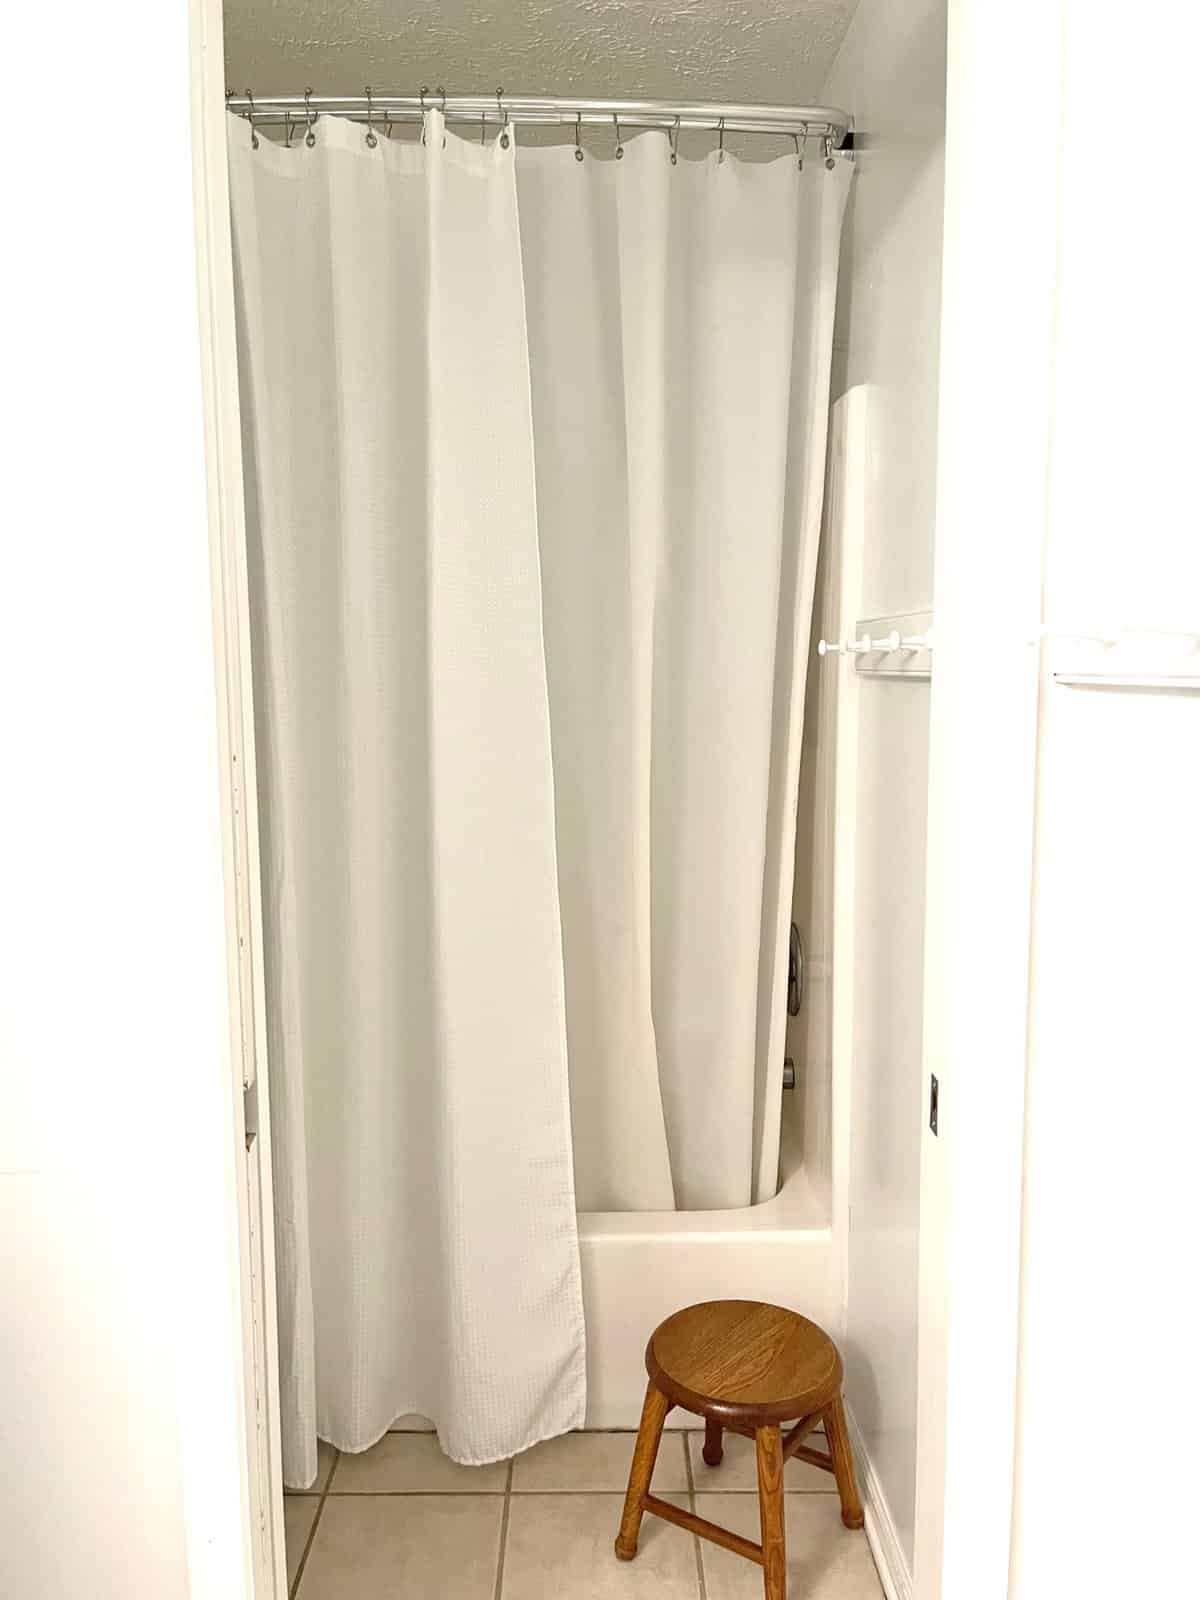 replacing shower glass door home update